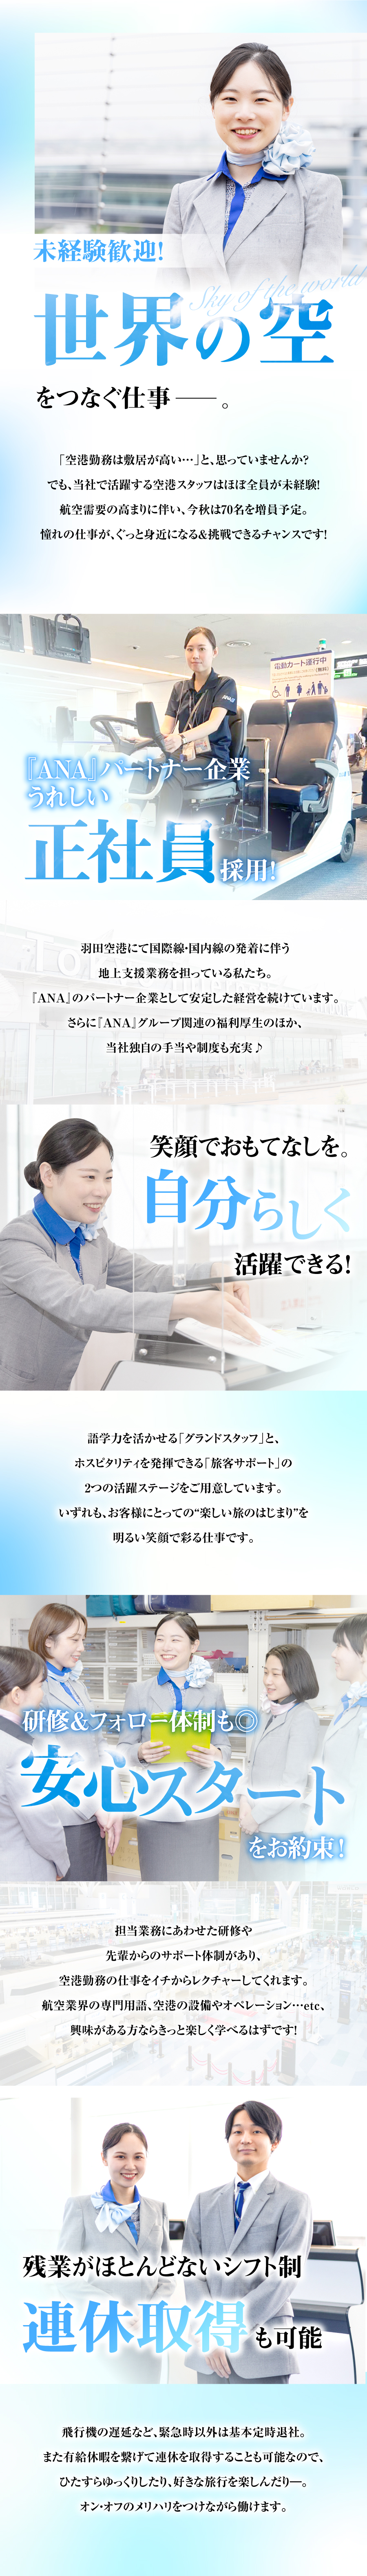 羽田空港国際旅客サービス株式会社からのメッセージ